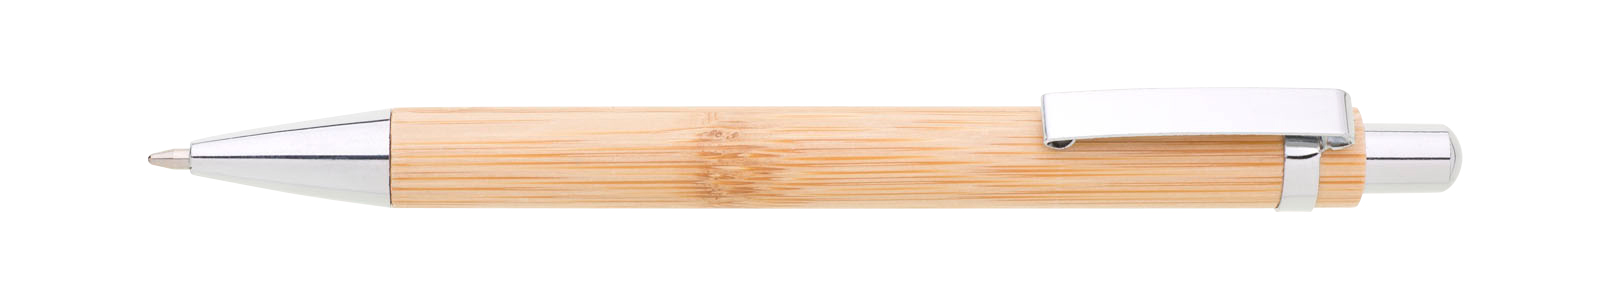 Propiska kov/bambus TURAL, natur